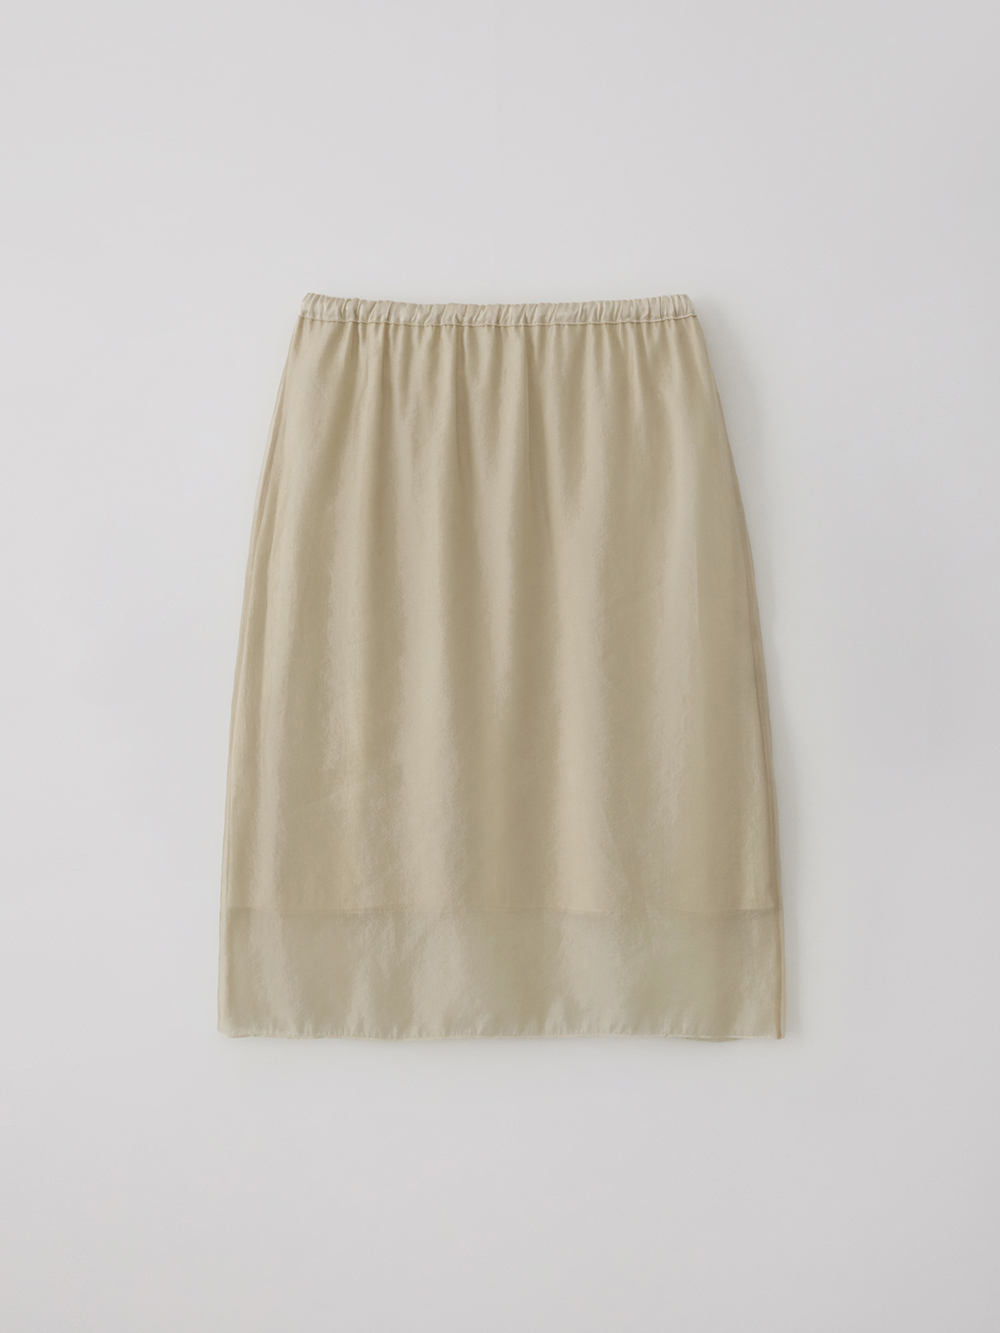 Reversible layered skirt (cream beige)